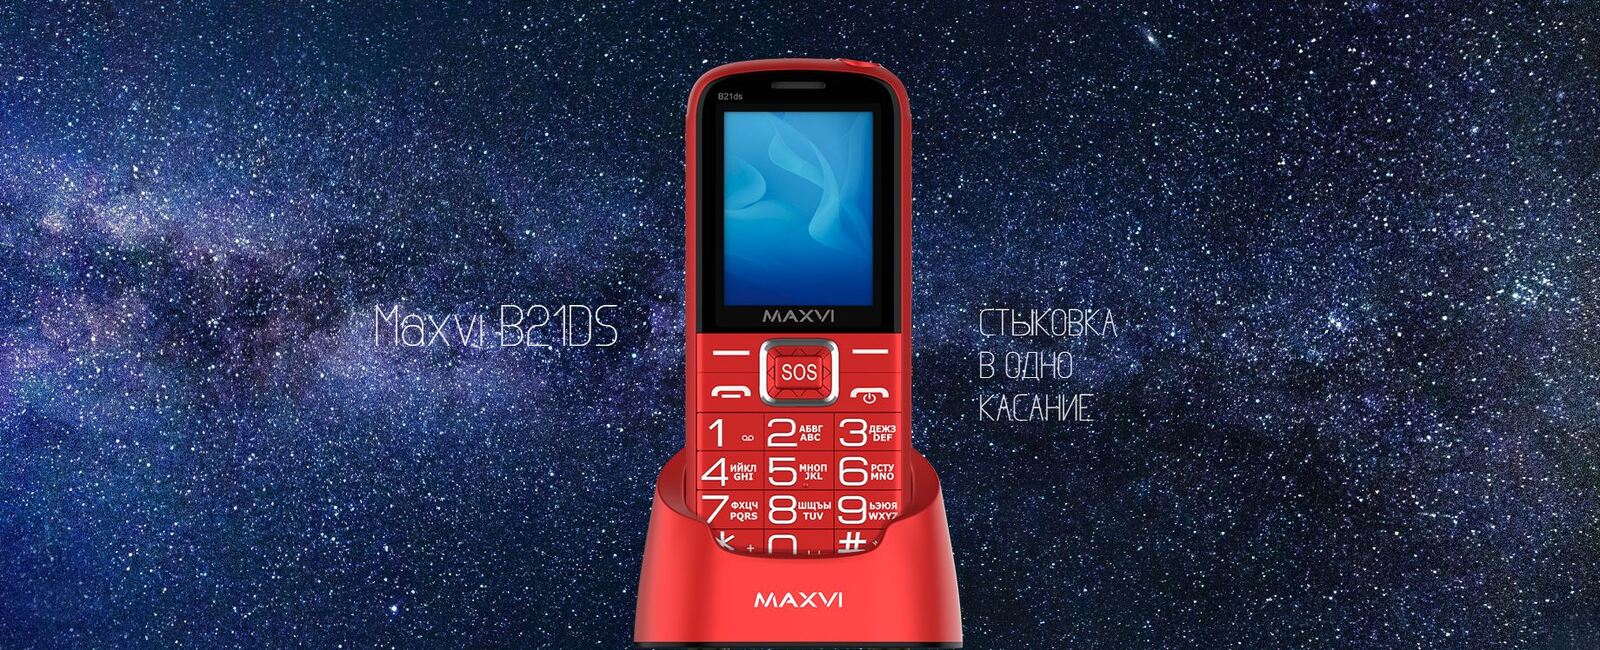 Сотовый телефон Maxvi B21ds.